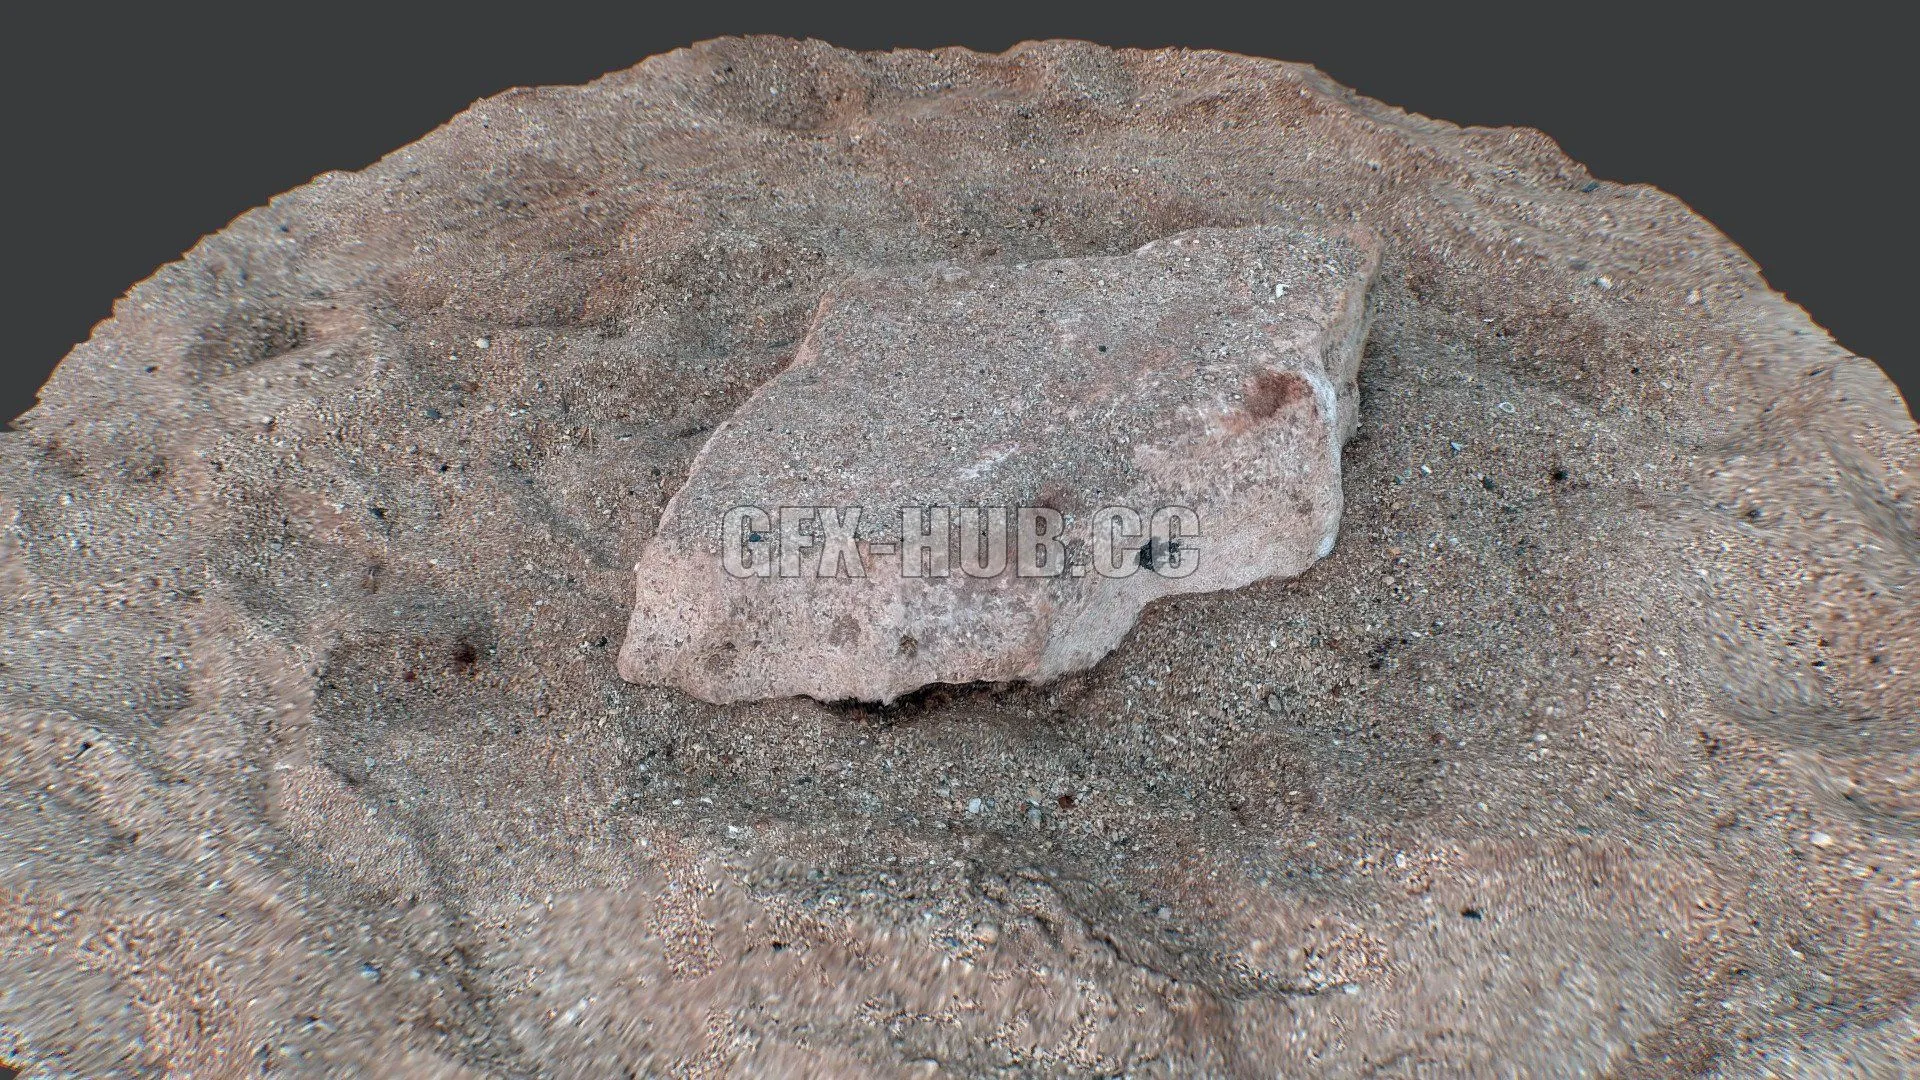 PBR Game 3D Model – Cyprus Rocks 2 raw scan